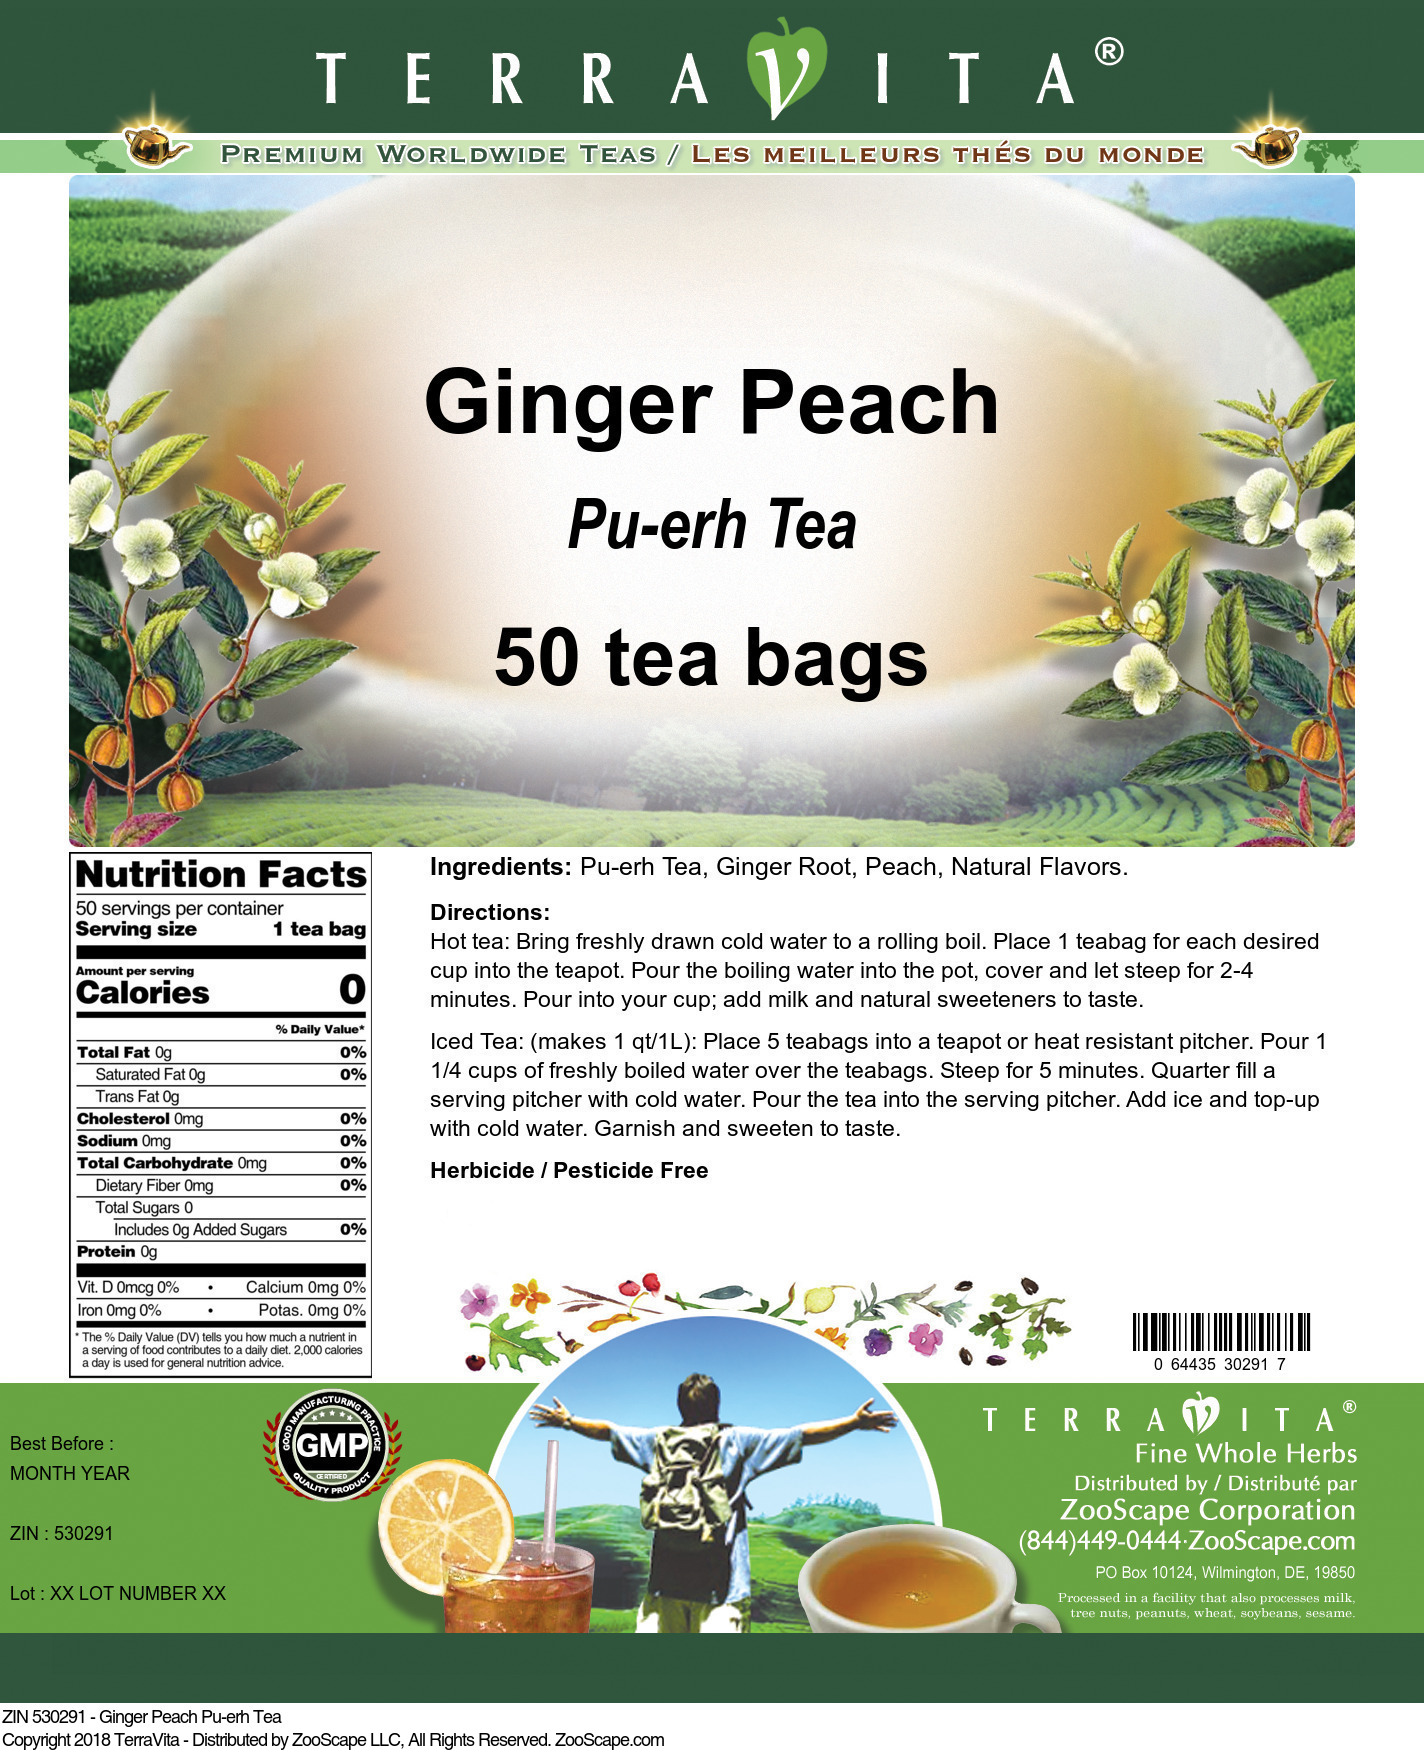 Ginger Peach Pu-erh Tea - Label